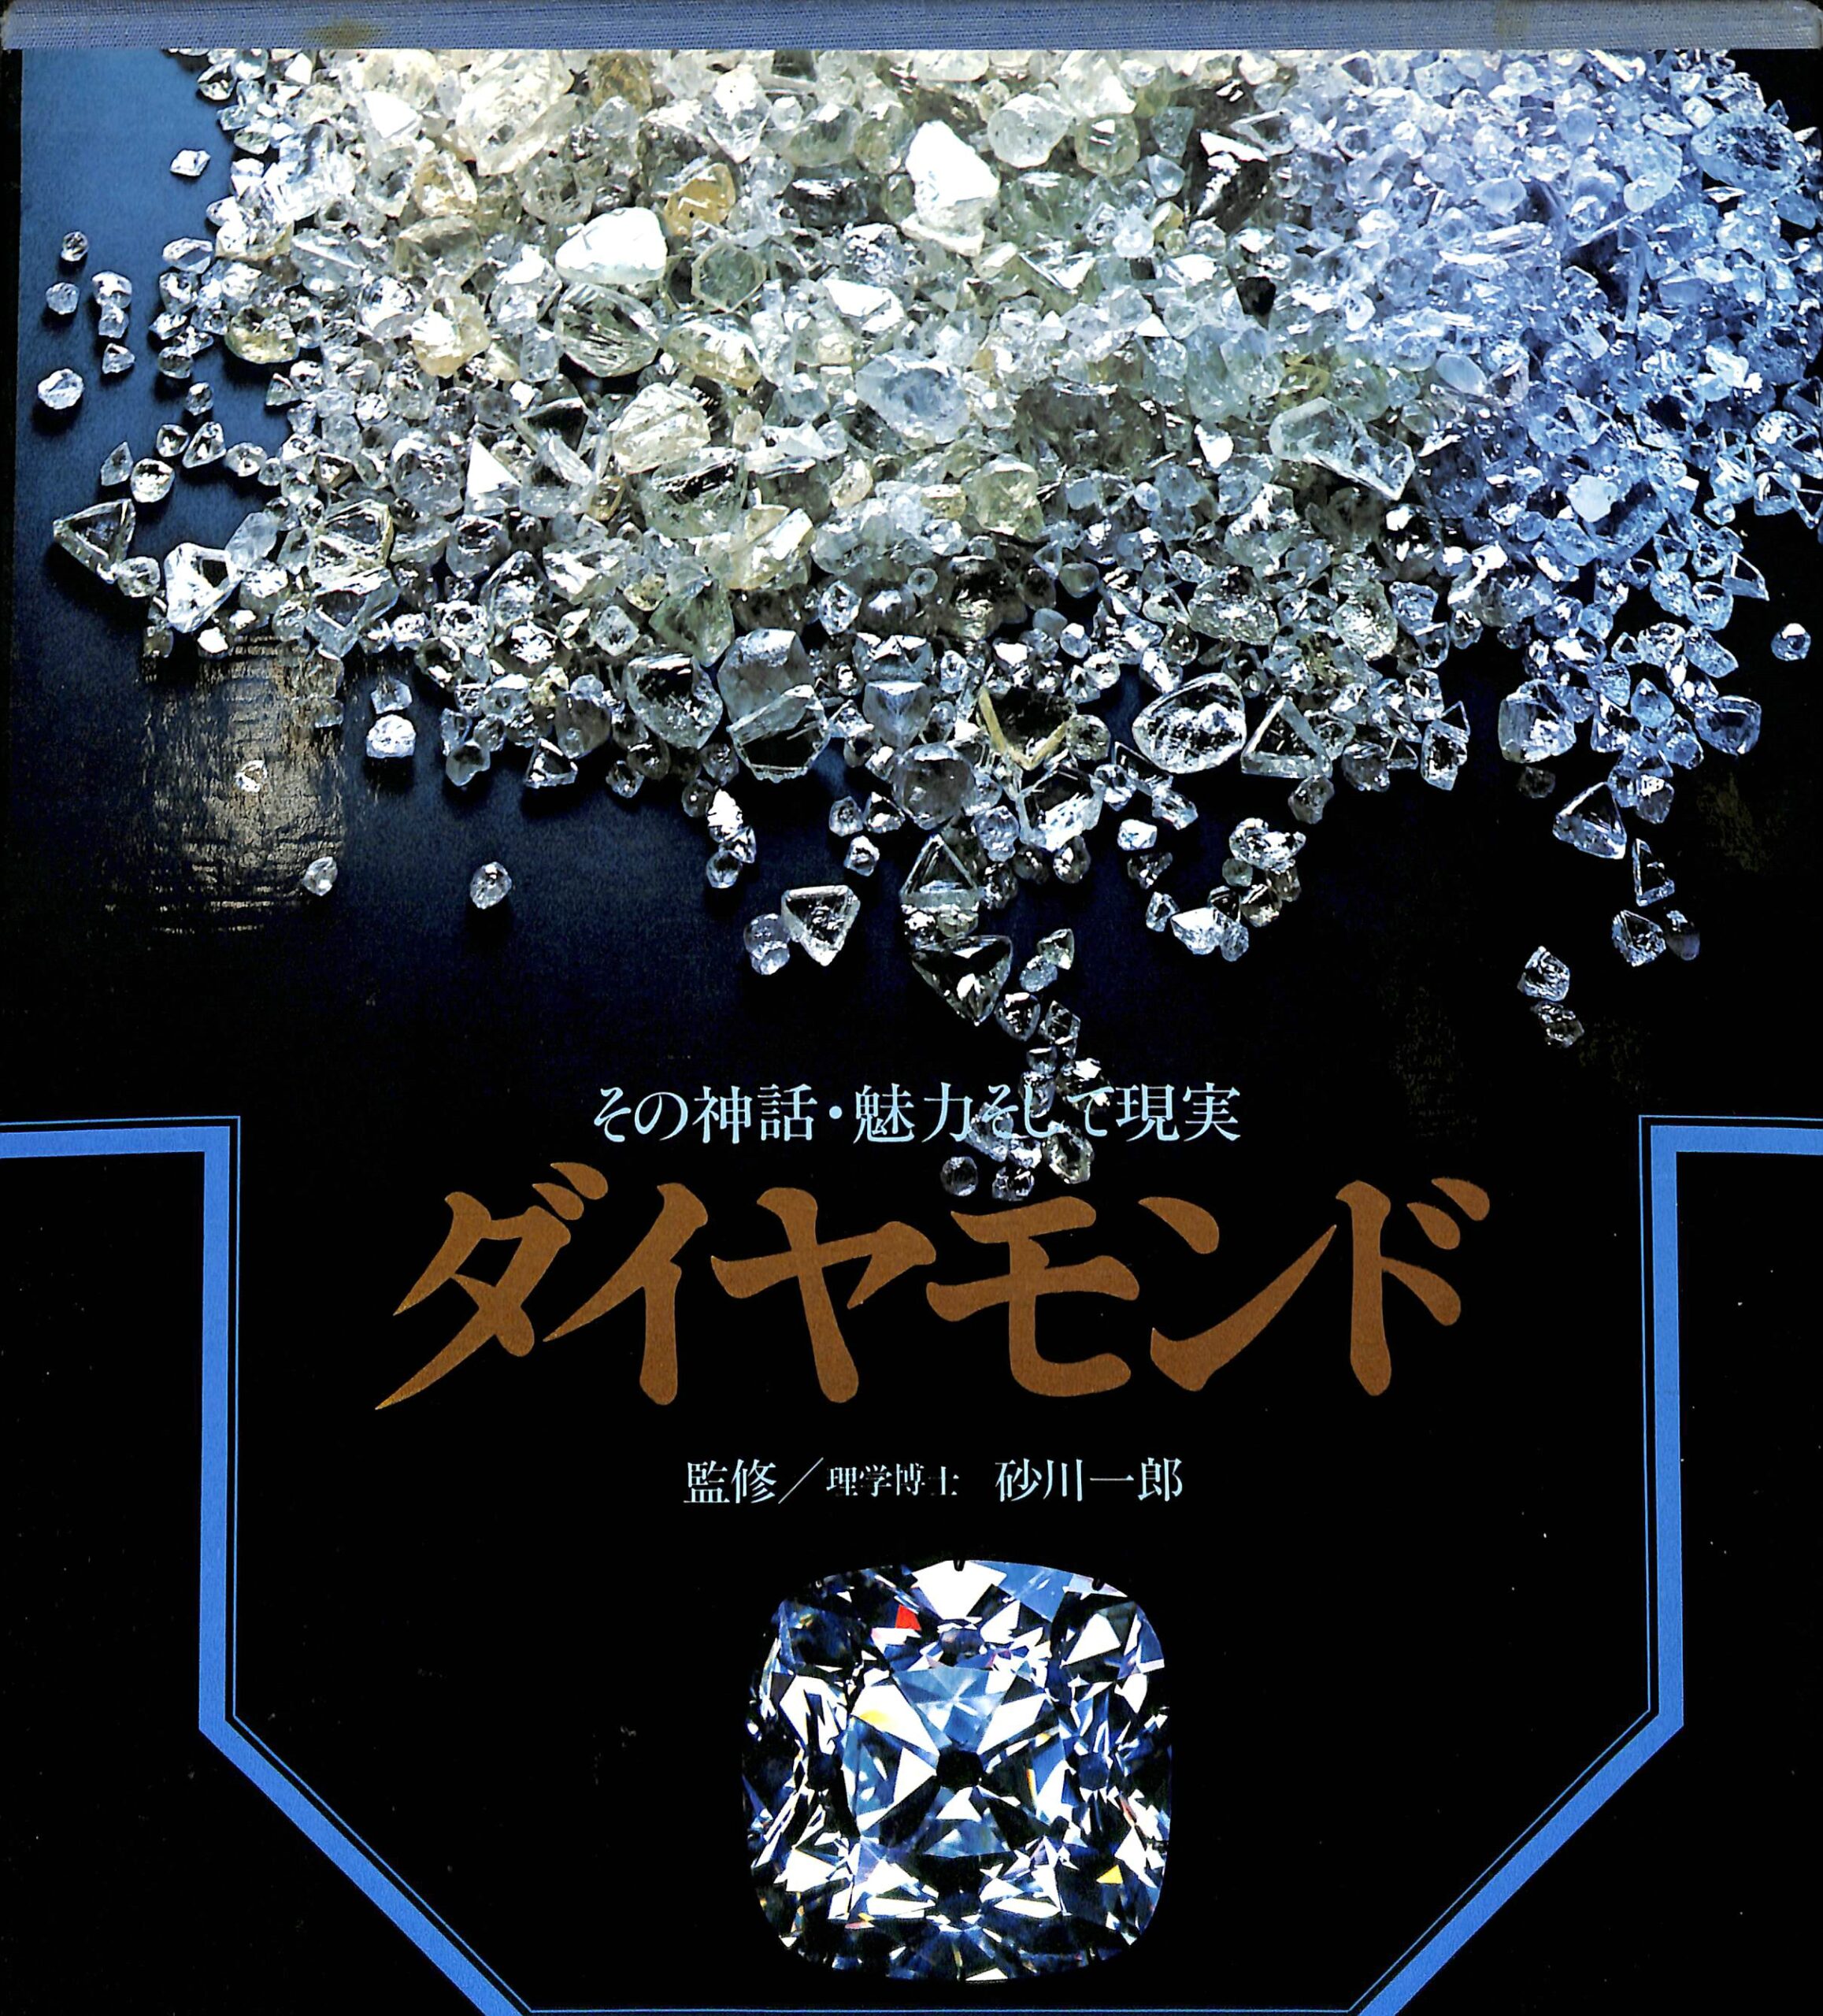 ダイヤモンド その神話・魅力そして現実 砂川一郎 監修 | 古本よみた屋 